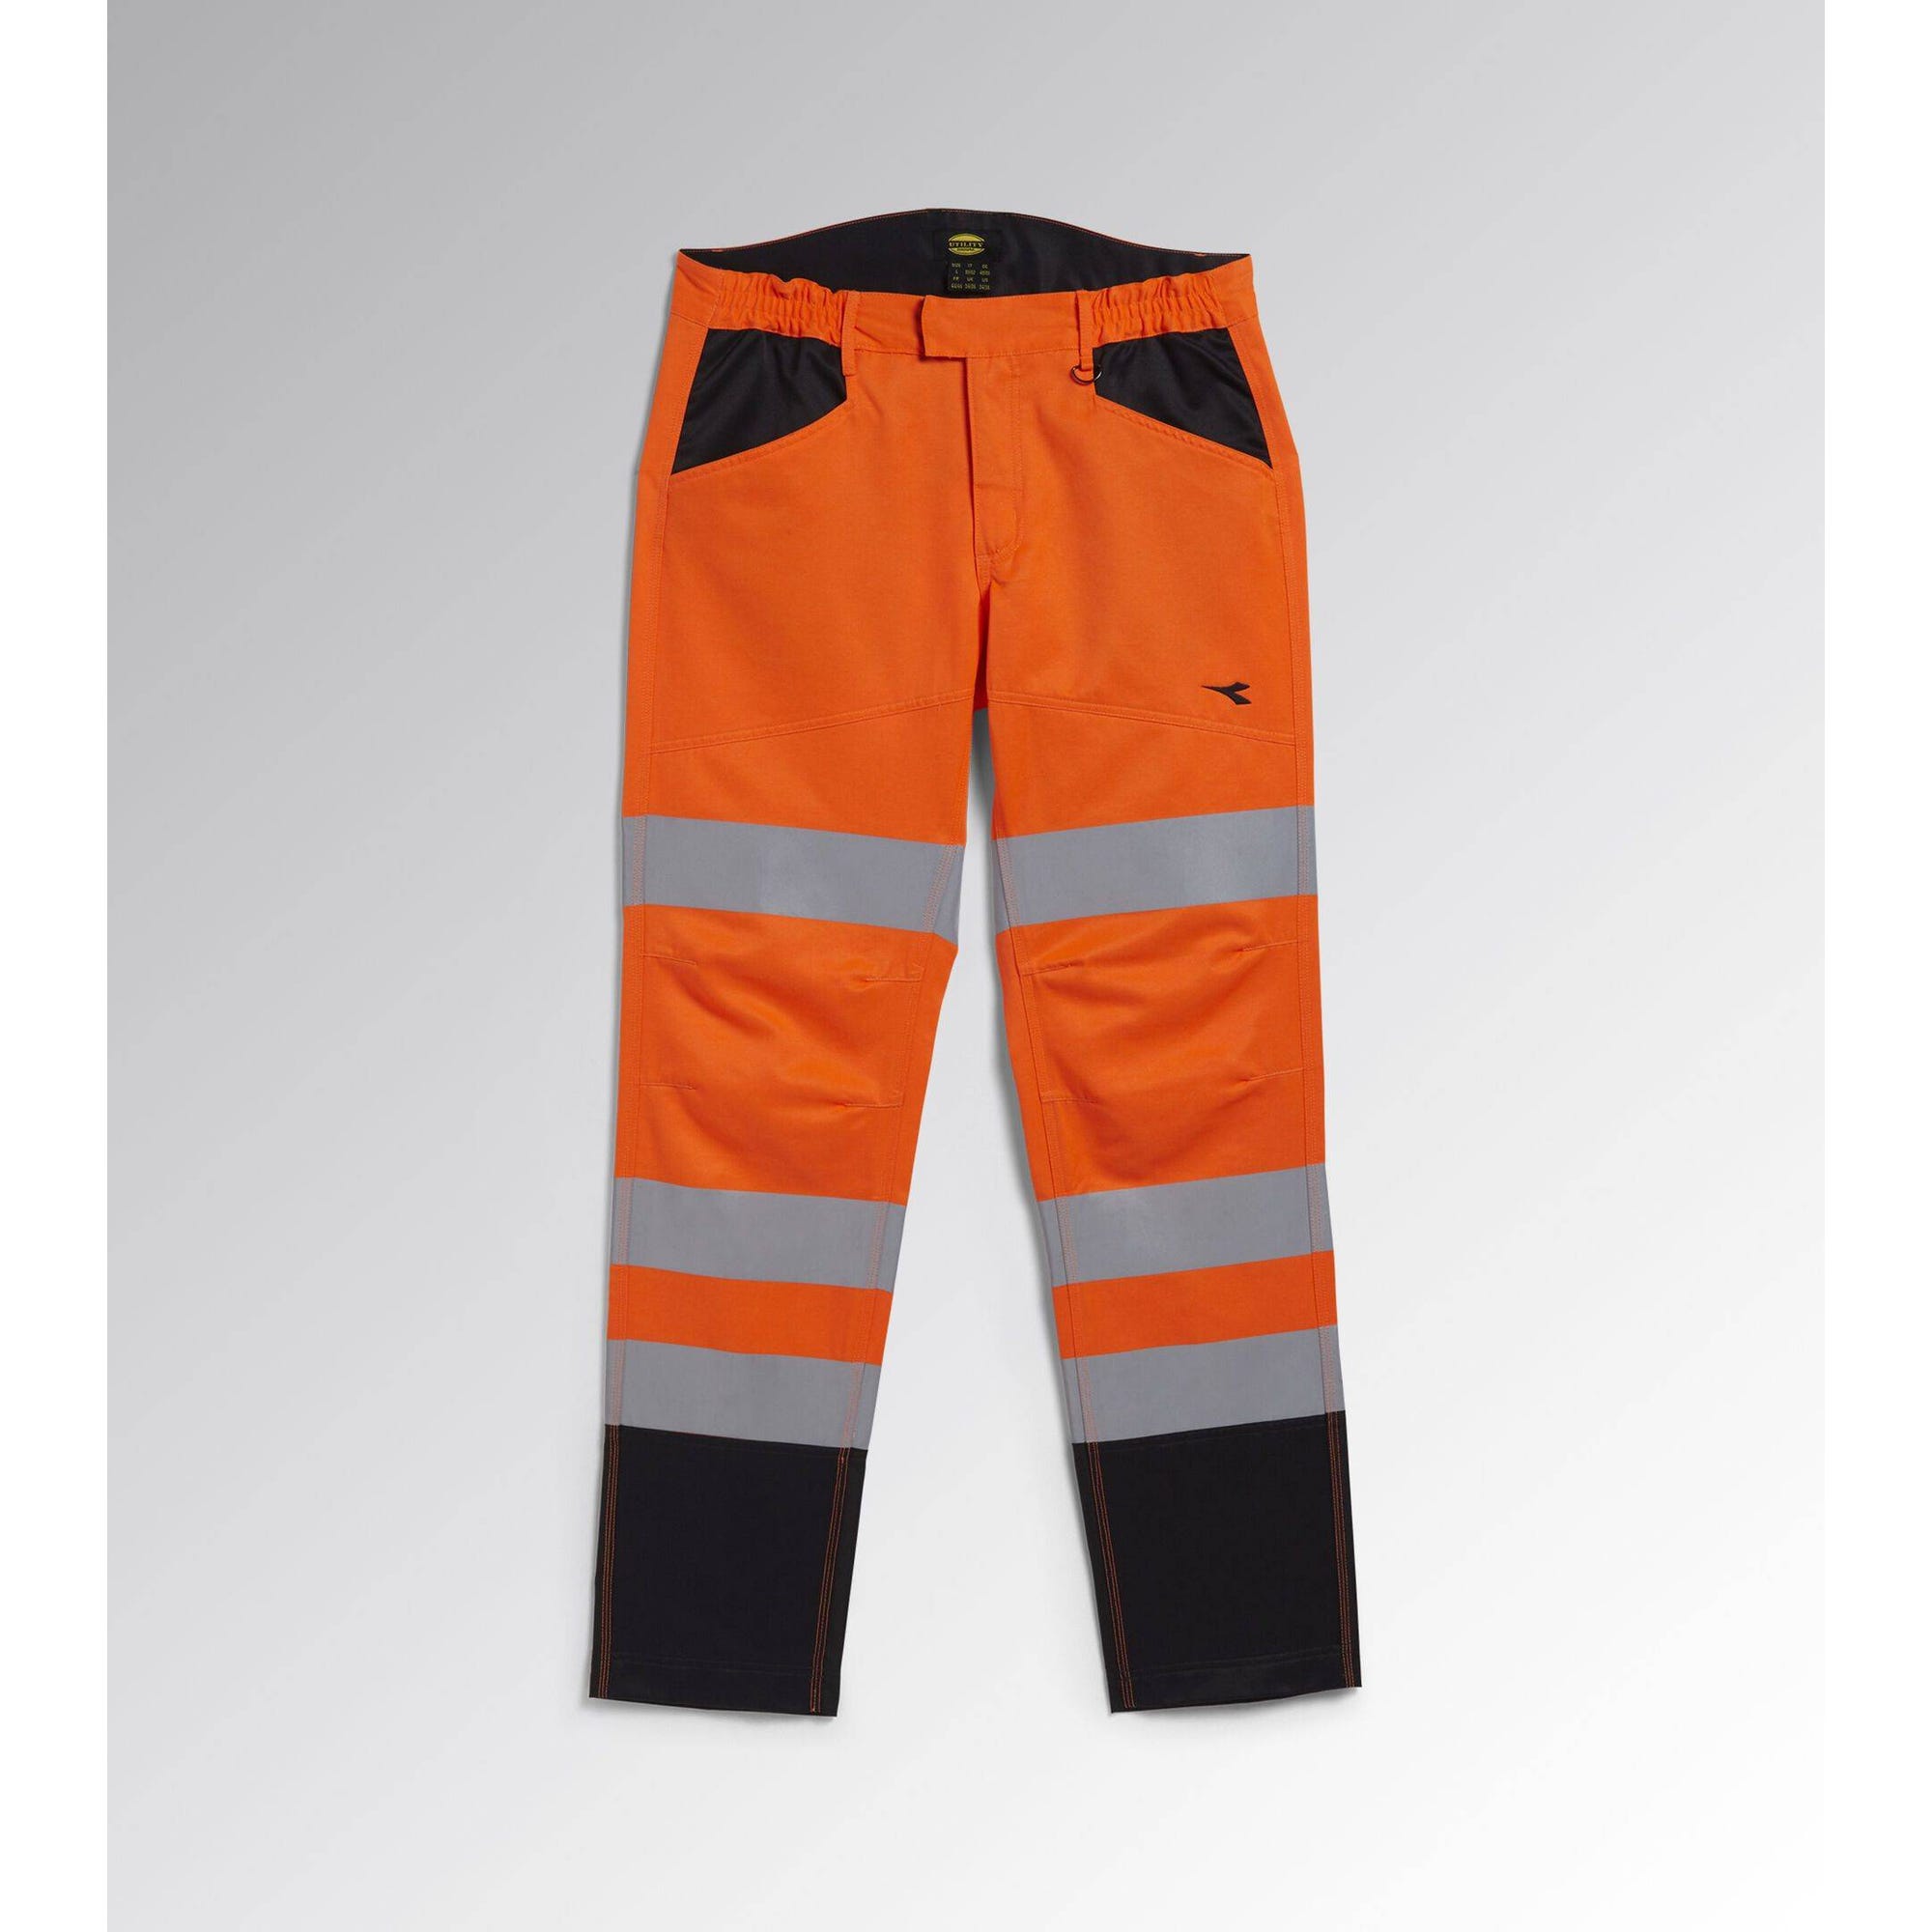 Pantalon de travail haute visibilité Diadora EN 20471:2013 2 Orange Fluo L 7